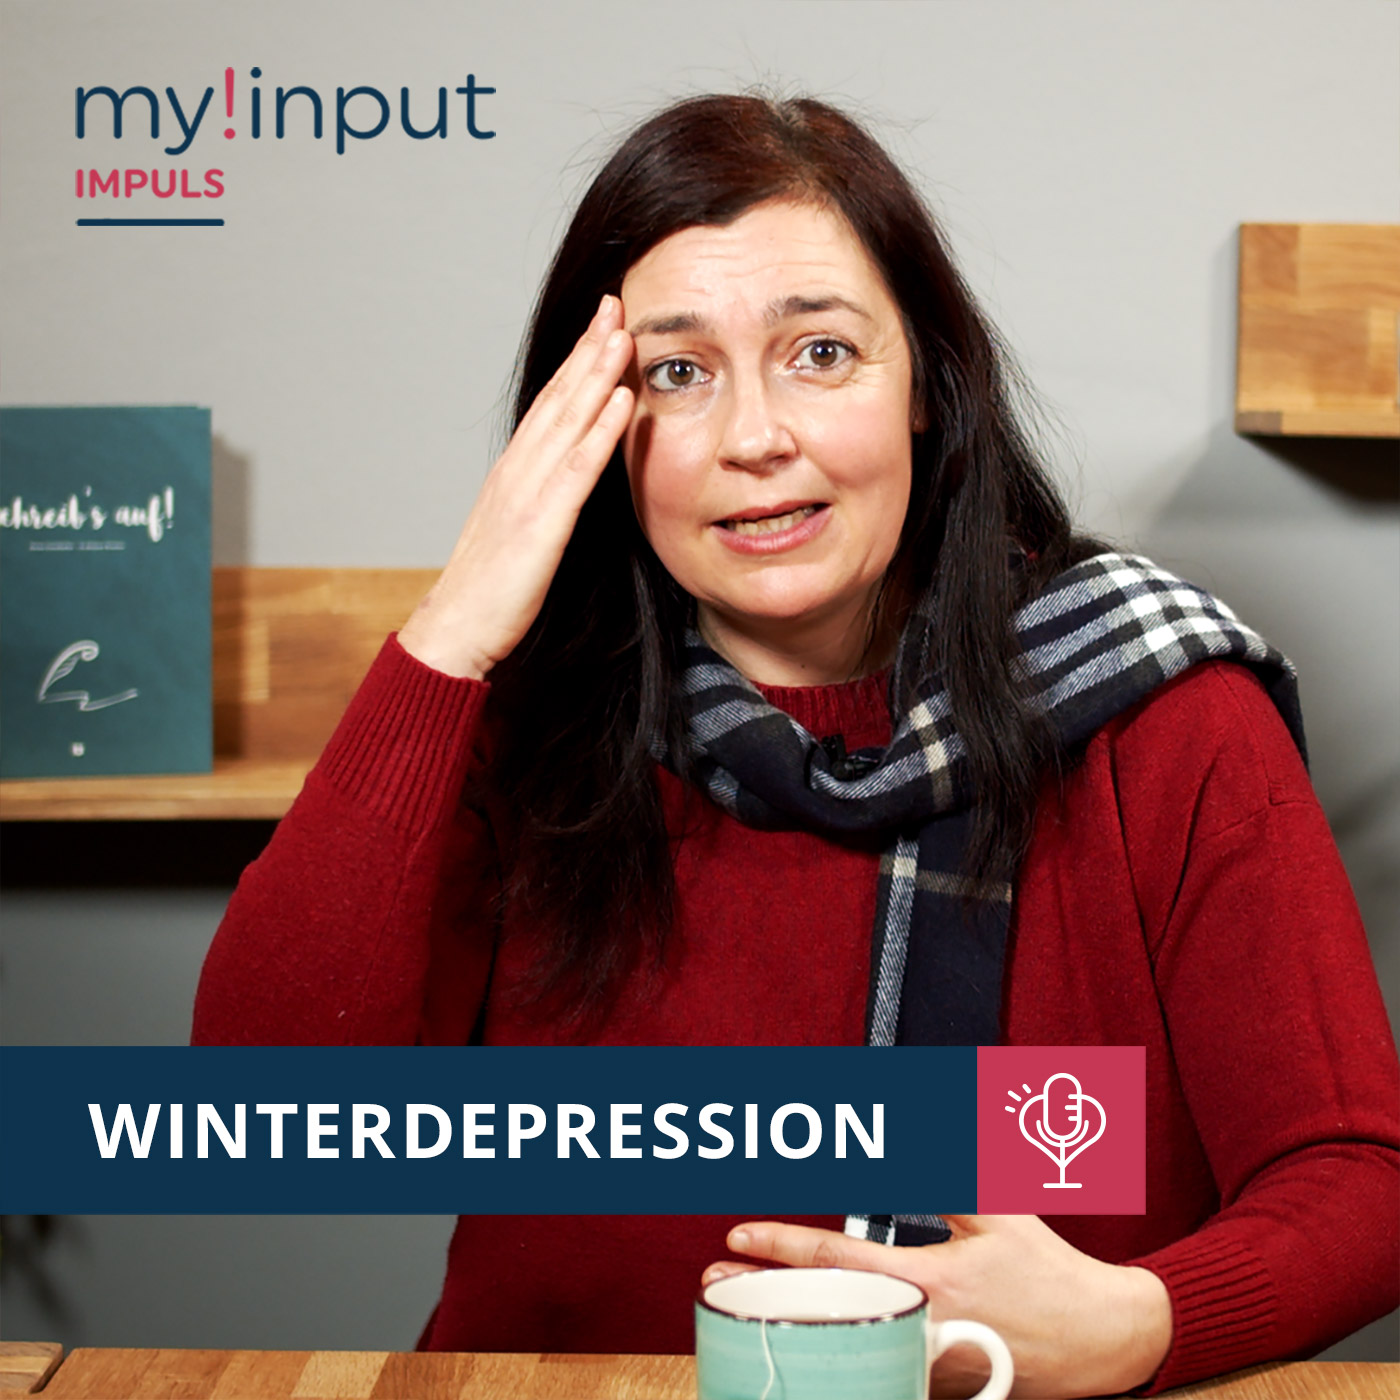 Winterdepression